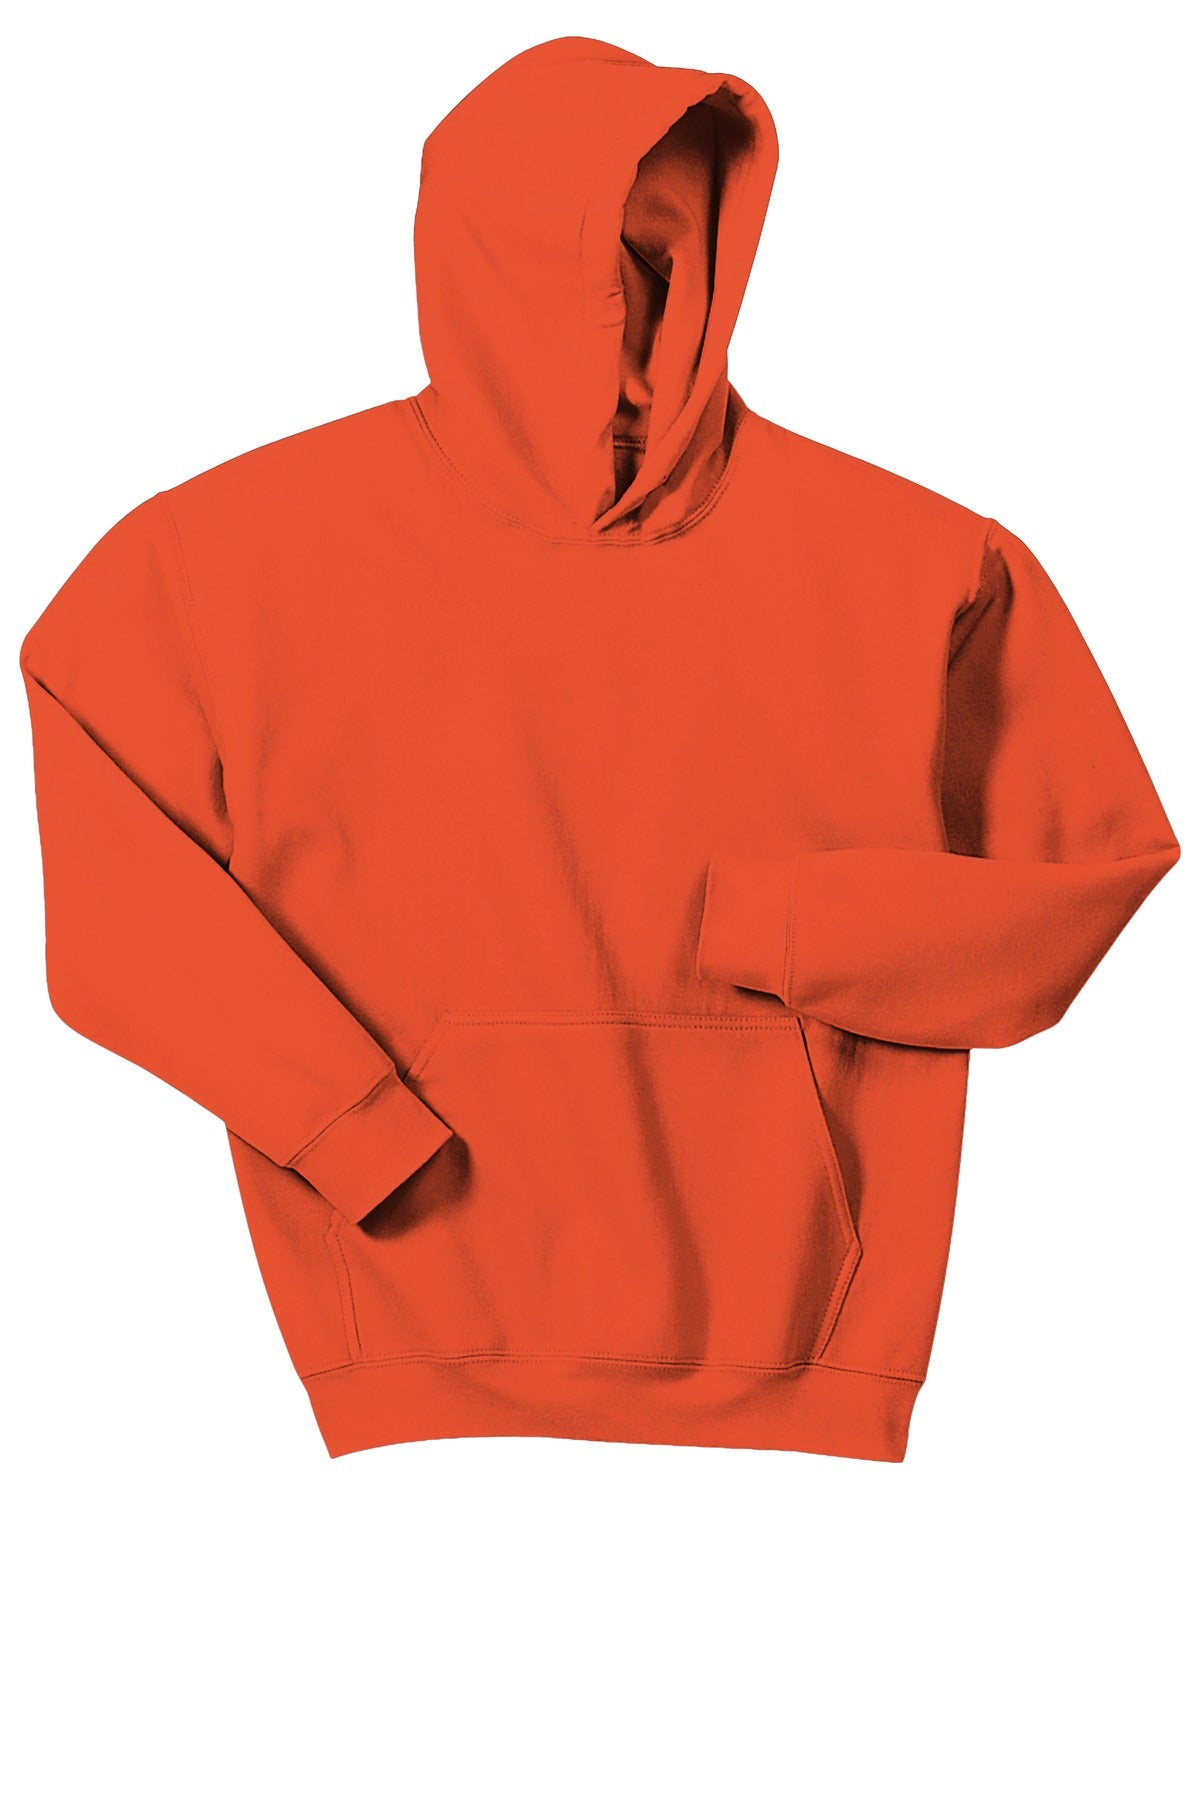 Gone RogueGildan® - Youth Heavy Blend™ Hooded Sweatshirt. 18500B Logo #5